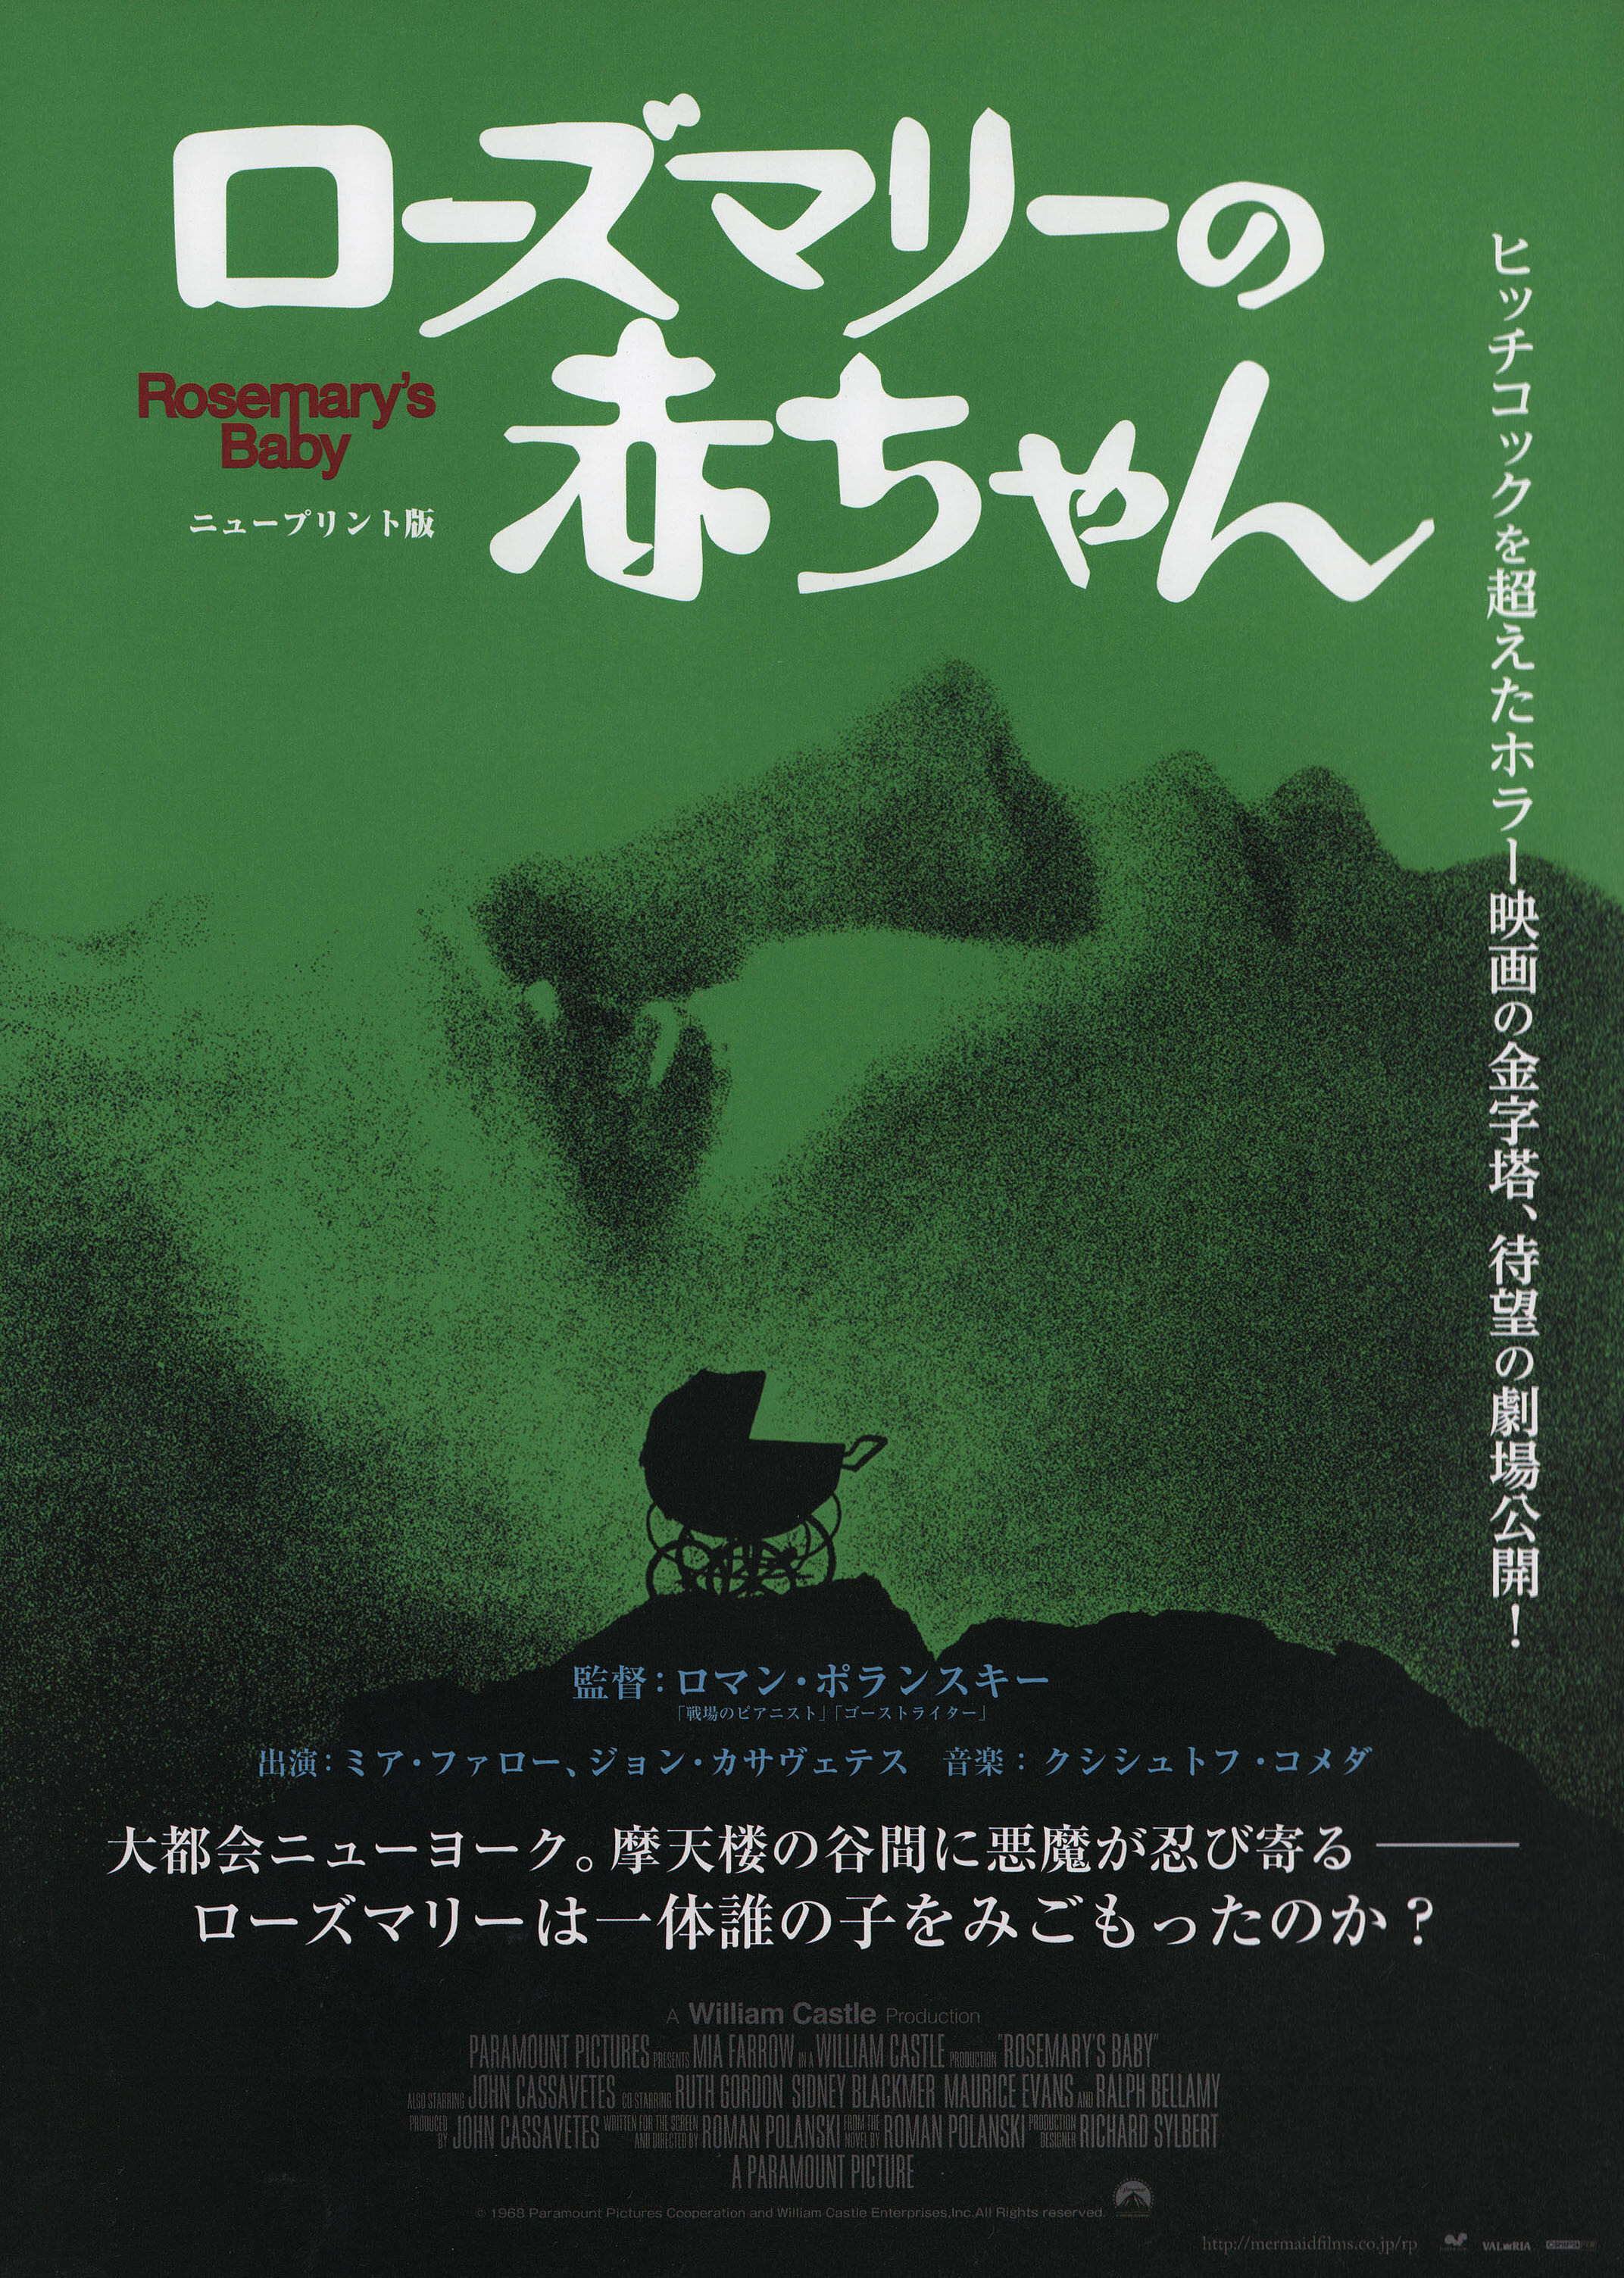 Ребенок Розмари (Rosemarys Baby, 1968), режиссёр Роман Полански, японский постер к фильму (ужасы, 2013 год)